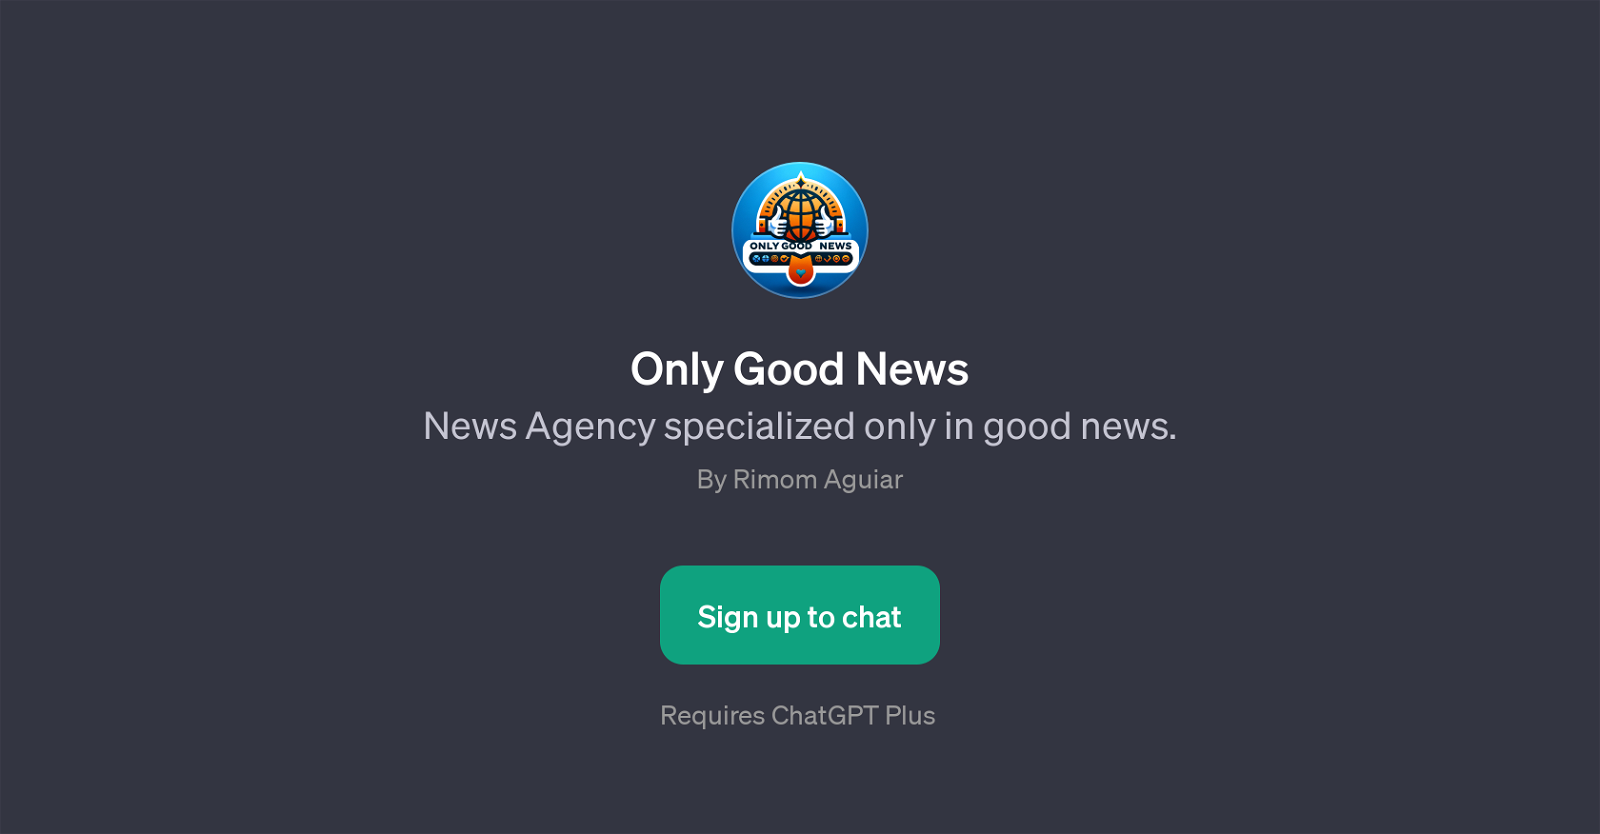 Only Good News website